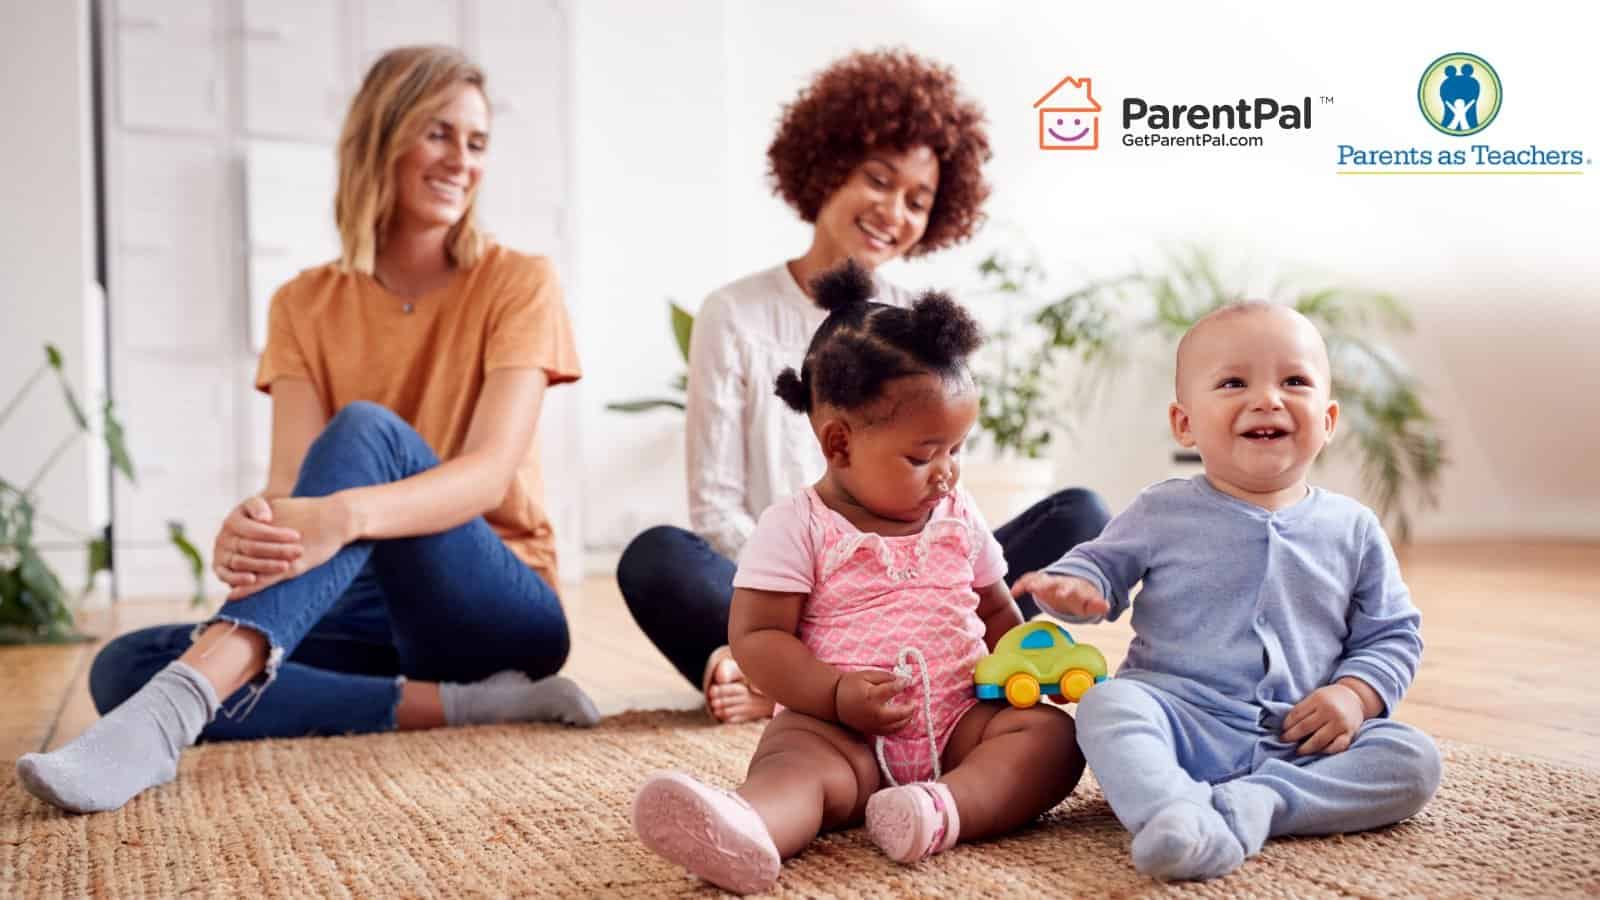 Photo: ParentPal and Parents as Teachers Partnership; logos and women with babies.